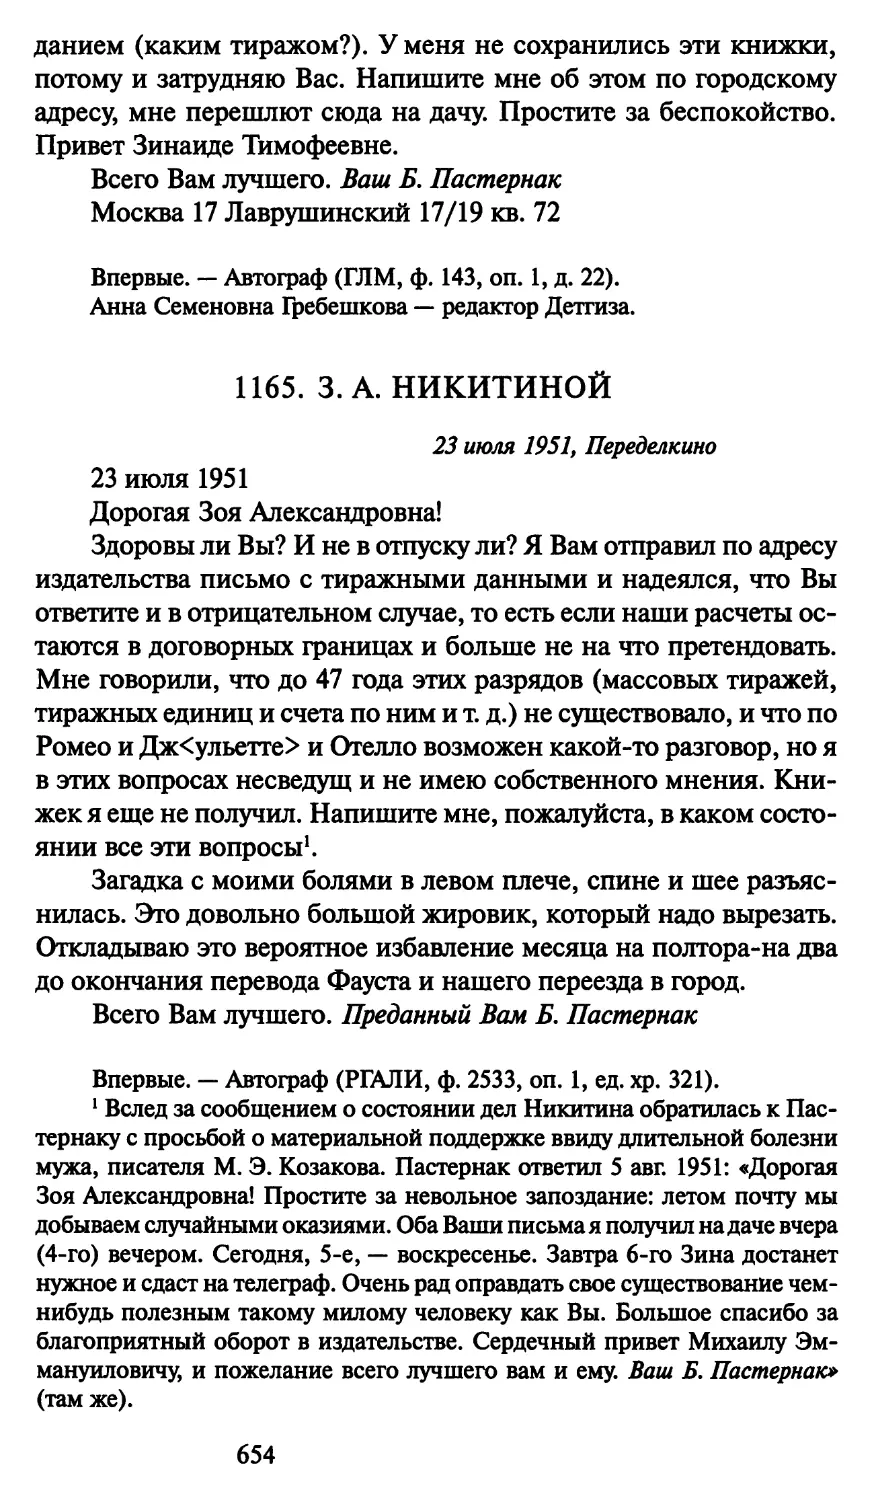 1165. 3. А. Никитиной 23 июля 1951